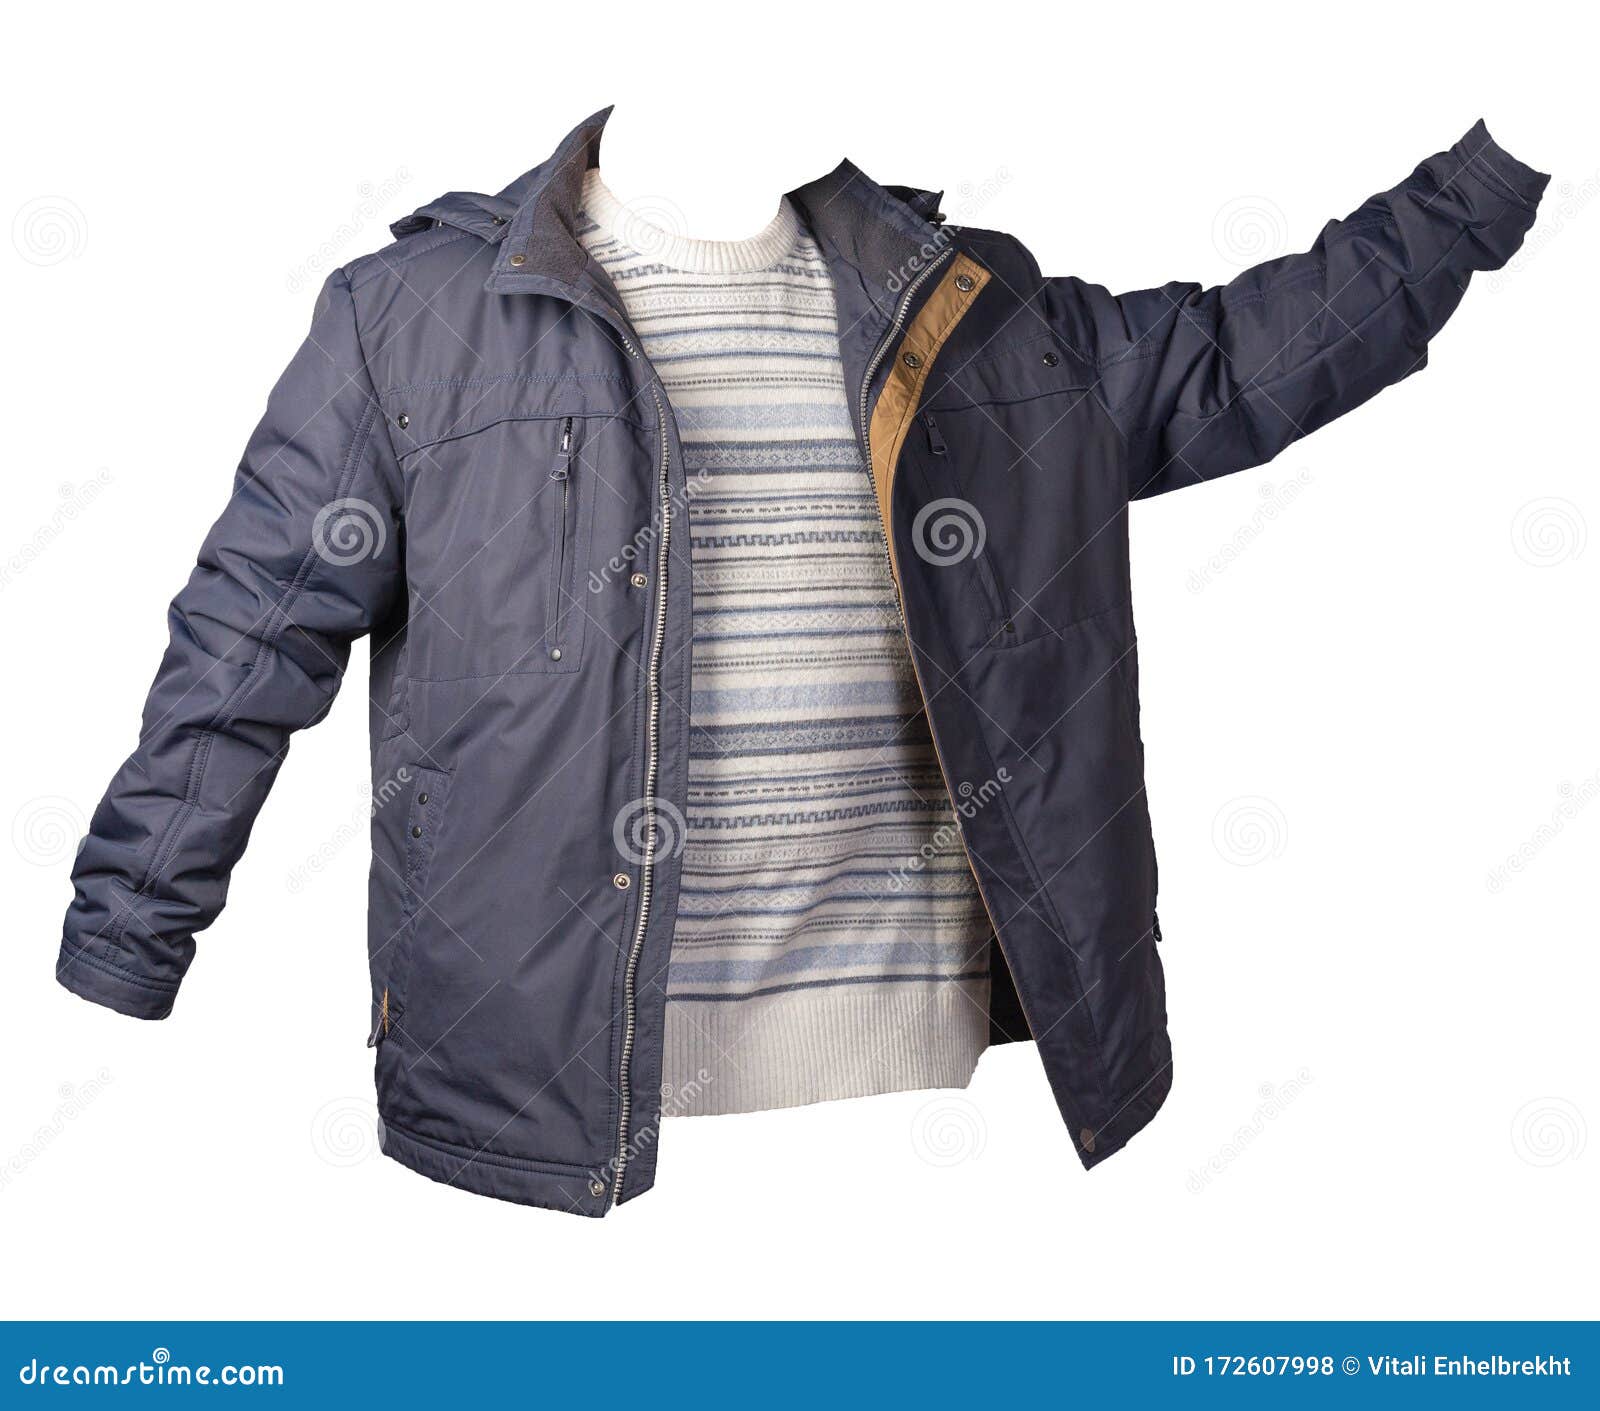 Jacket and Sweater Isolated on White Background Stock Photo - Image of ...